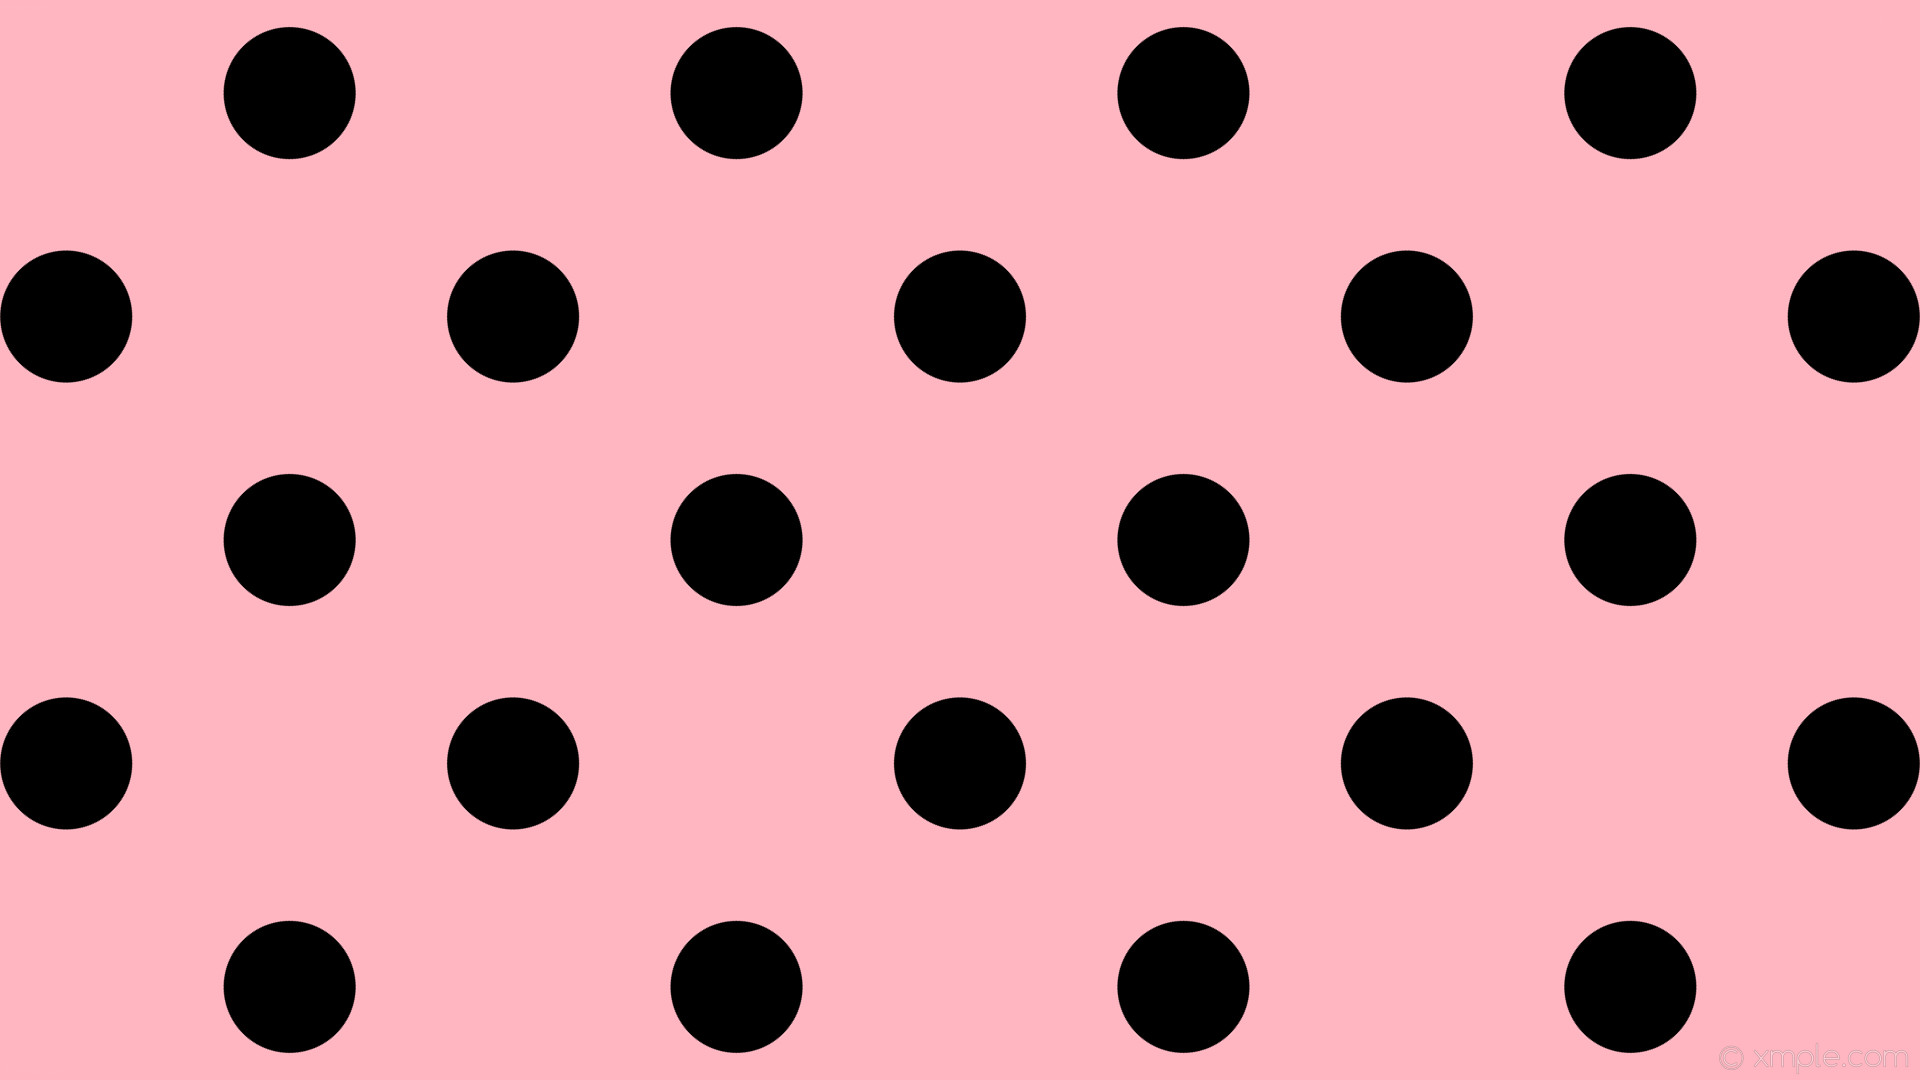 1920x1080 wallpaper black polka dots spots pink light pink #ffb6c1 #000000 45Â° 132px  316px